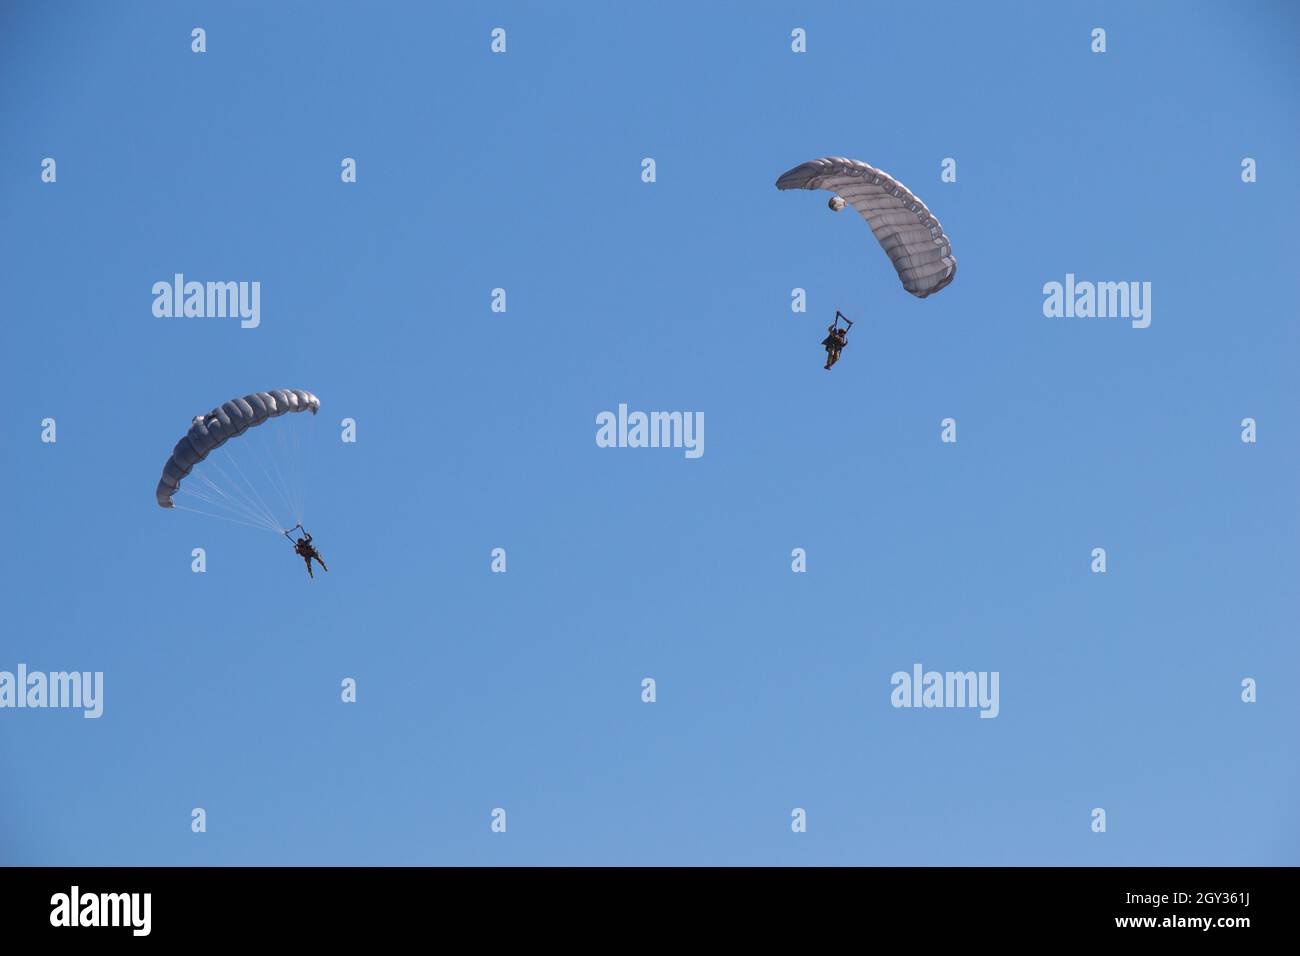 Deux personnes aventureuses volant dans le ciel bleu vif avec des parachutes Banque D'Images